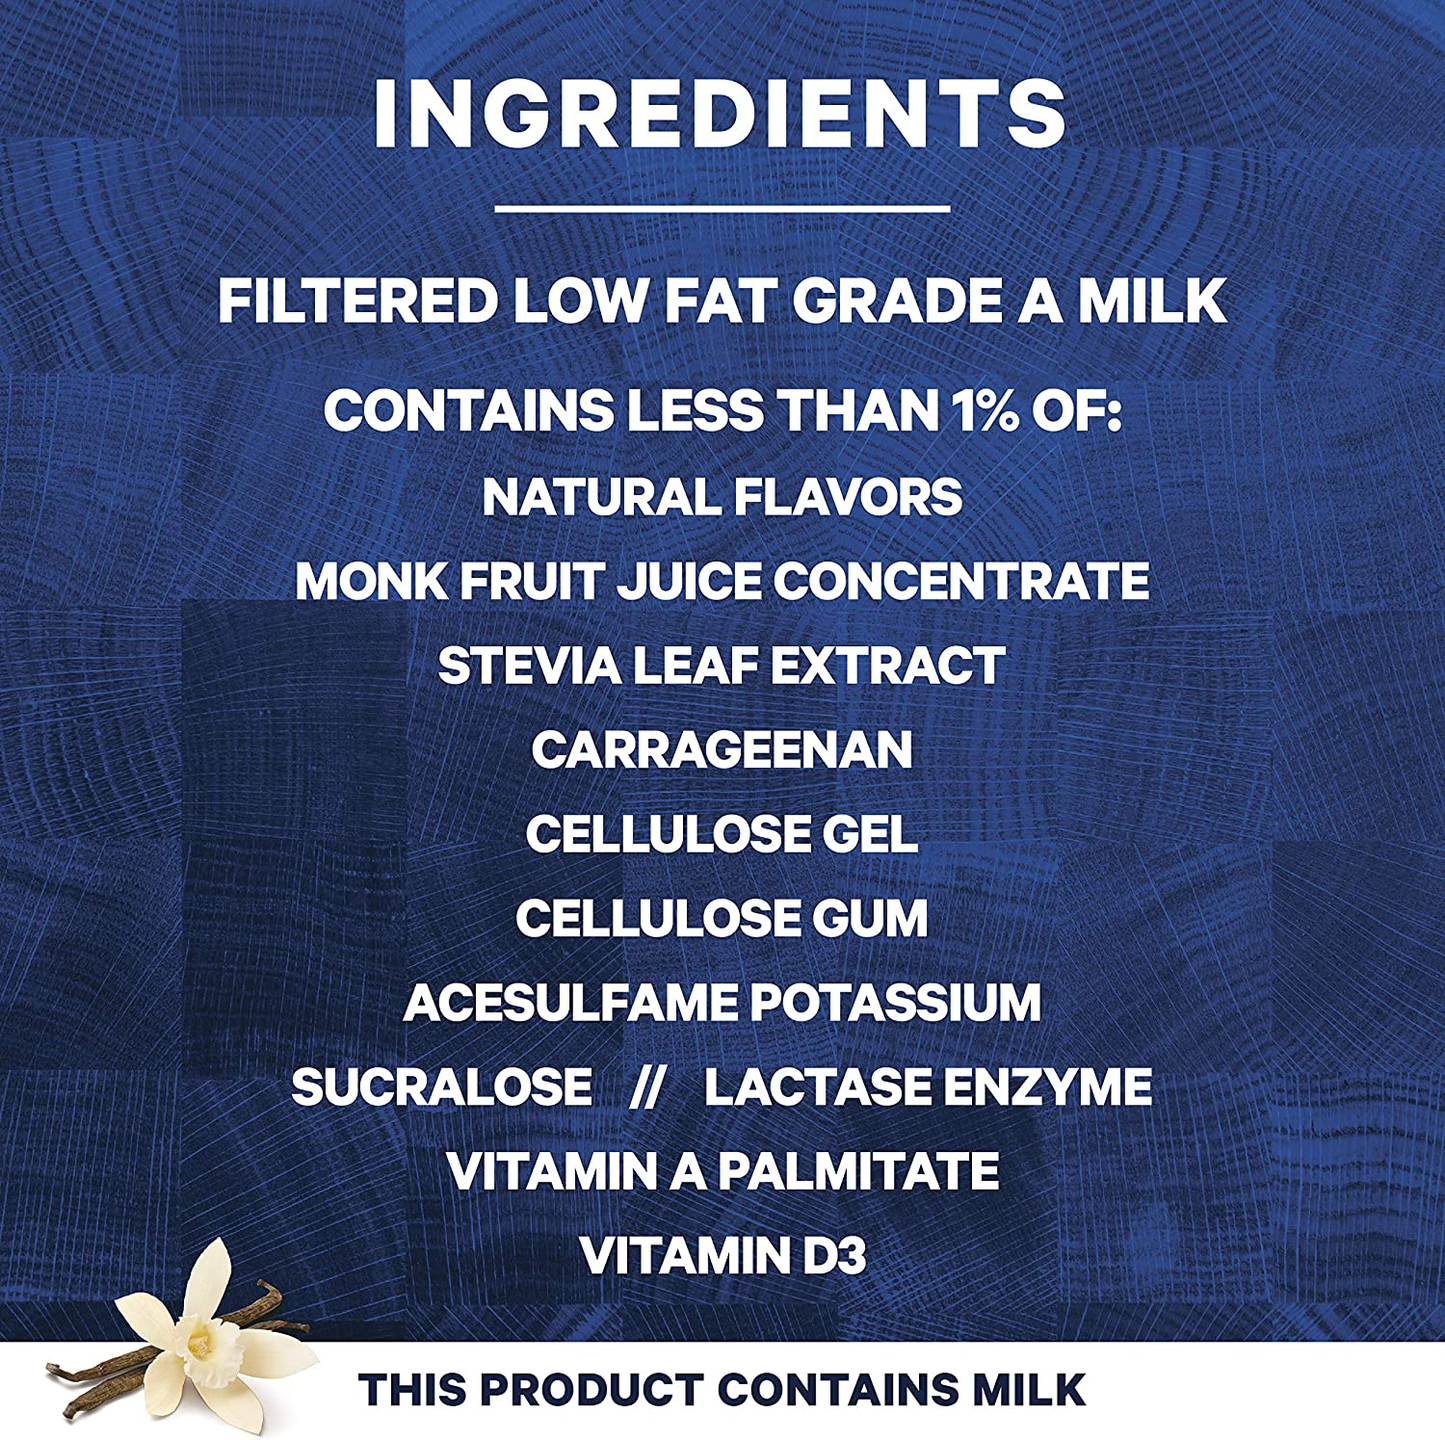 Core Power High Protein Milk Shake, Vanilla, 14 Fl Oz